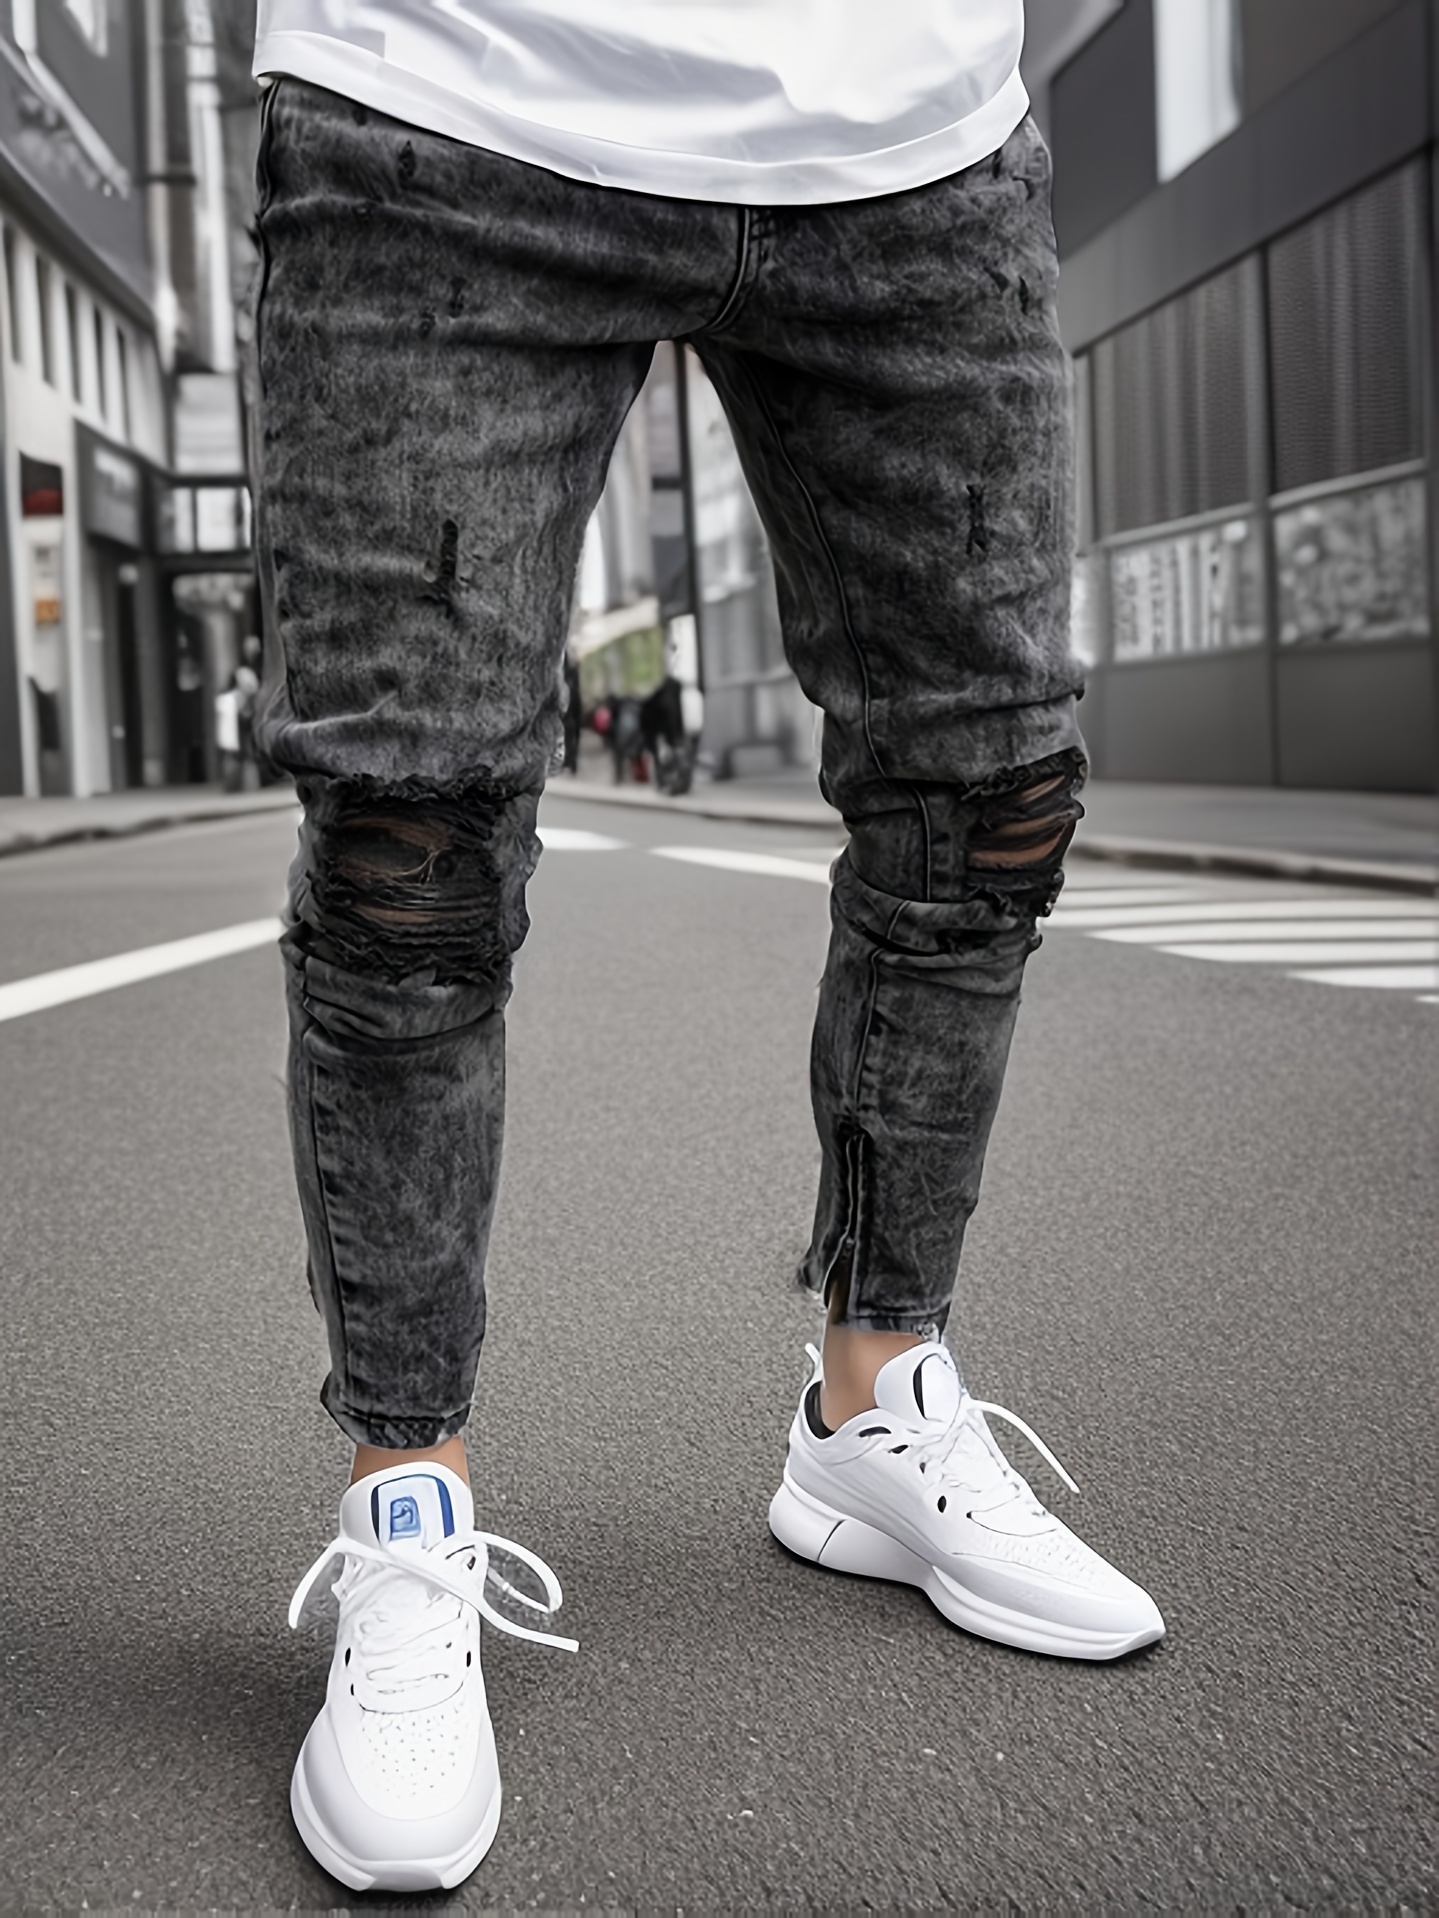 Slim Fit Jeans Men's Casual Street Style Medium Stretch - Temu Canada